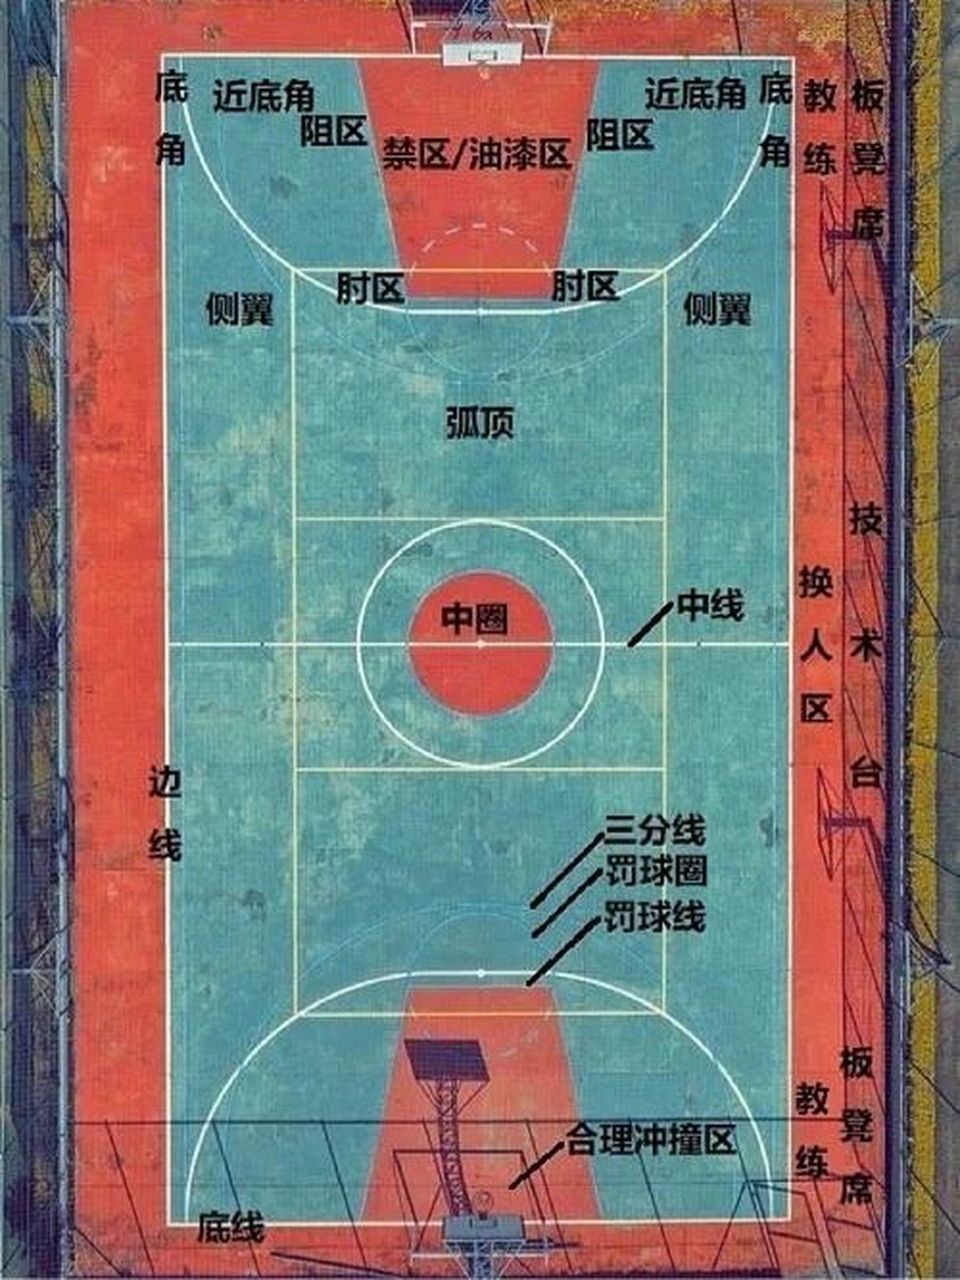 篮球位置的分工图图片